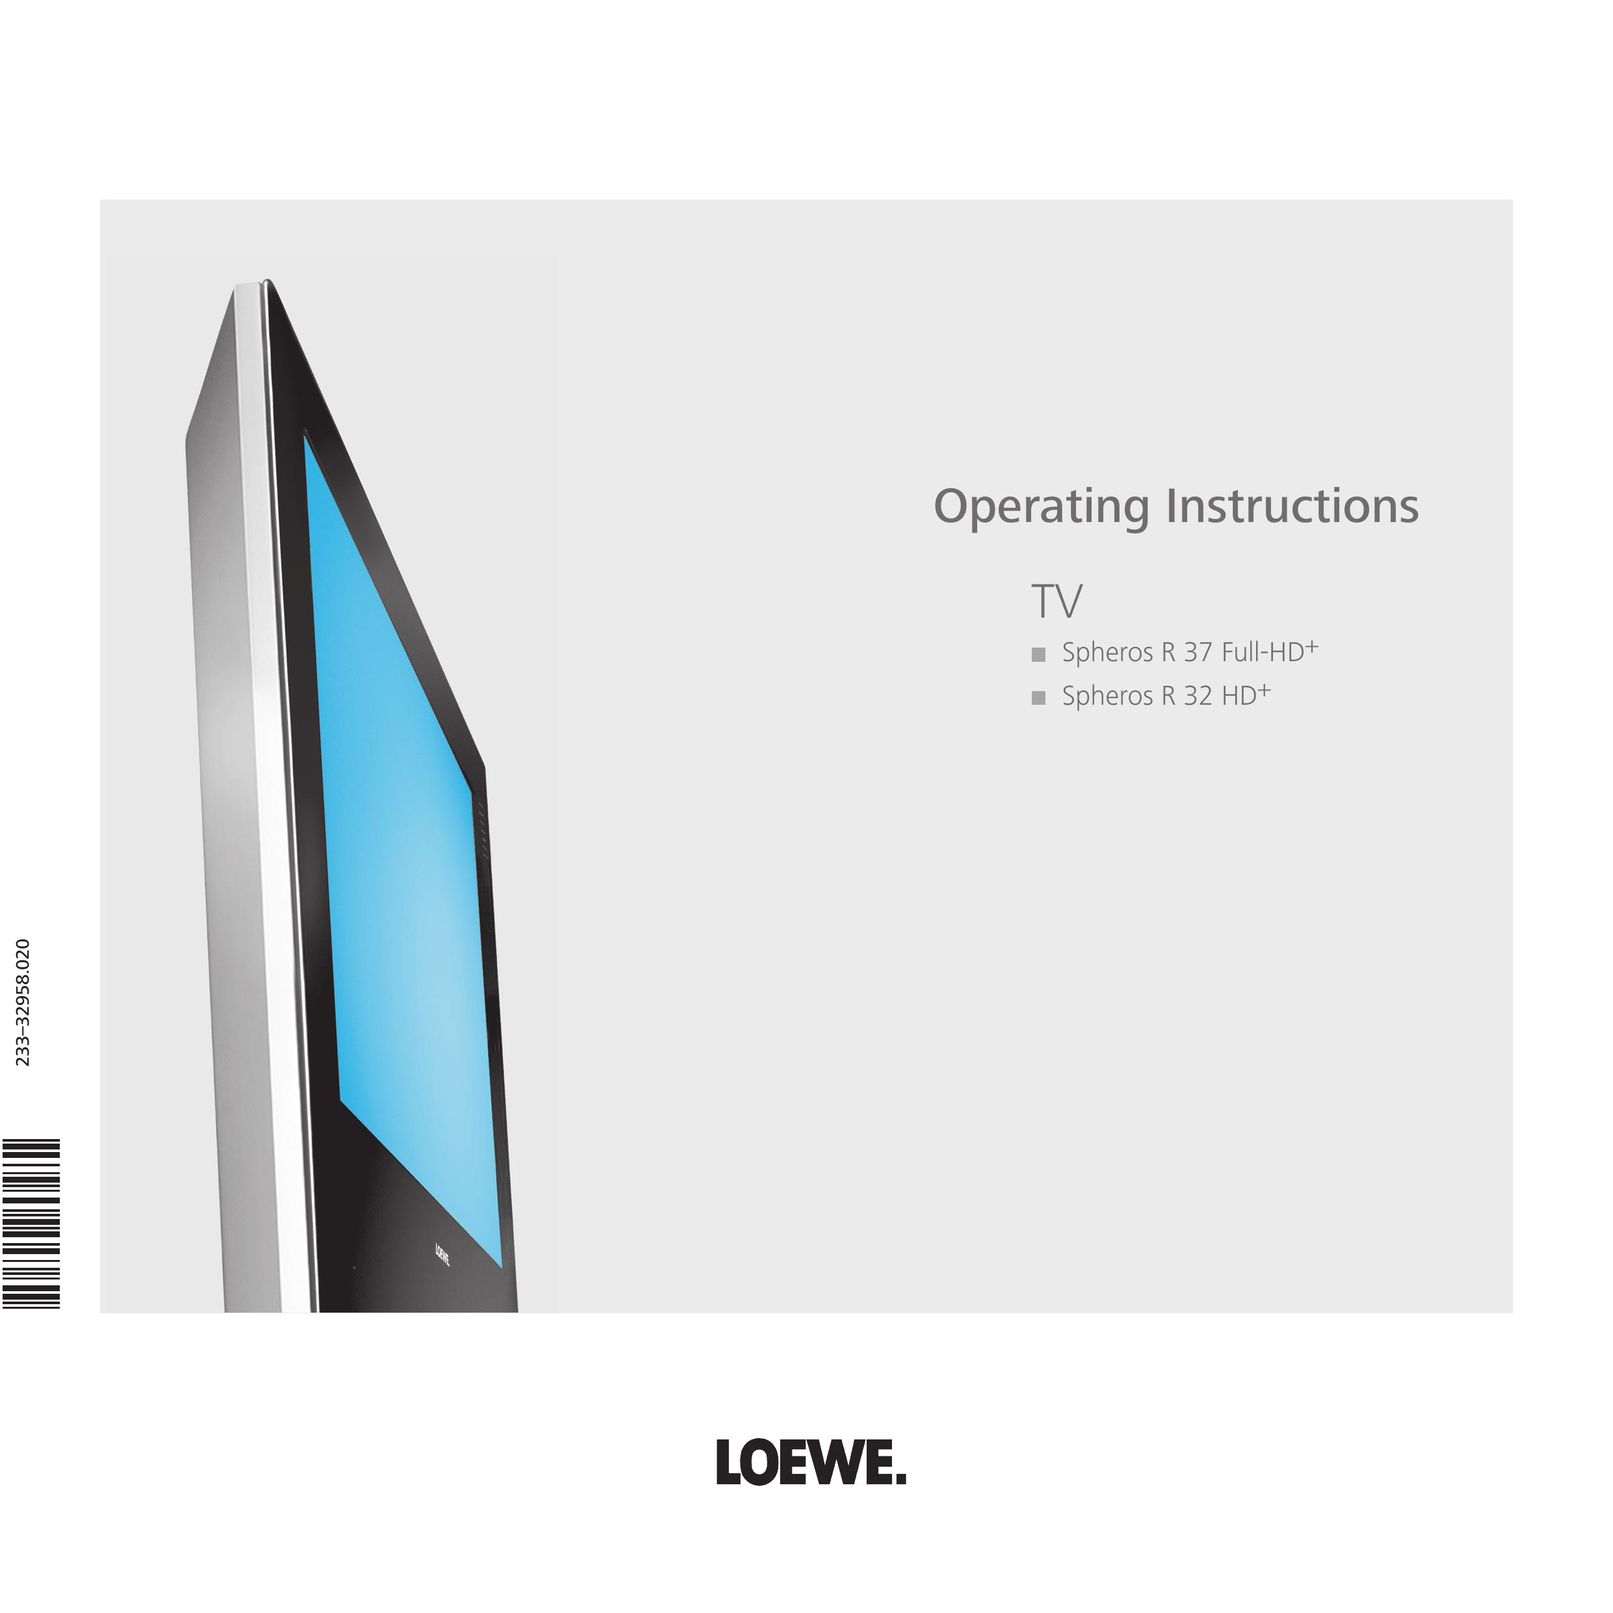 Loewe Spheros R 32 HD+ CRT Television User Manual